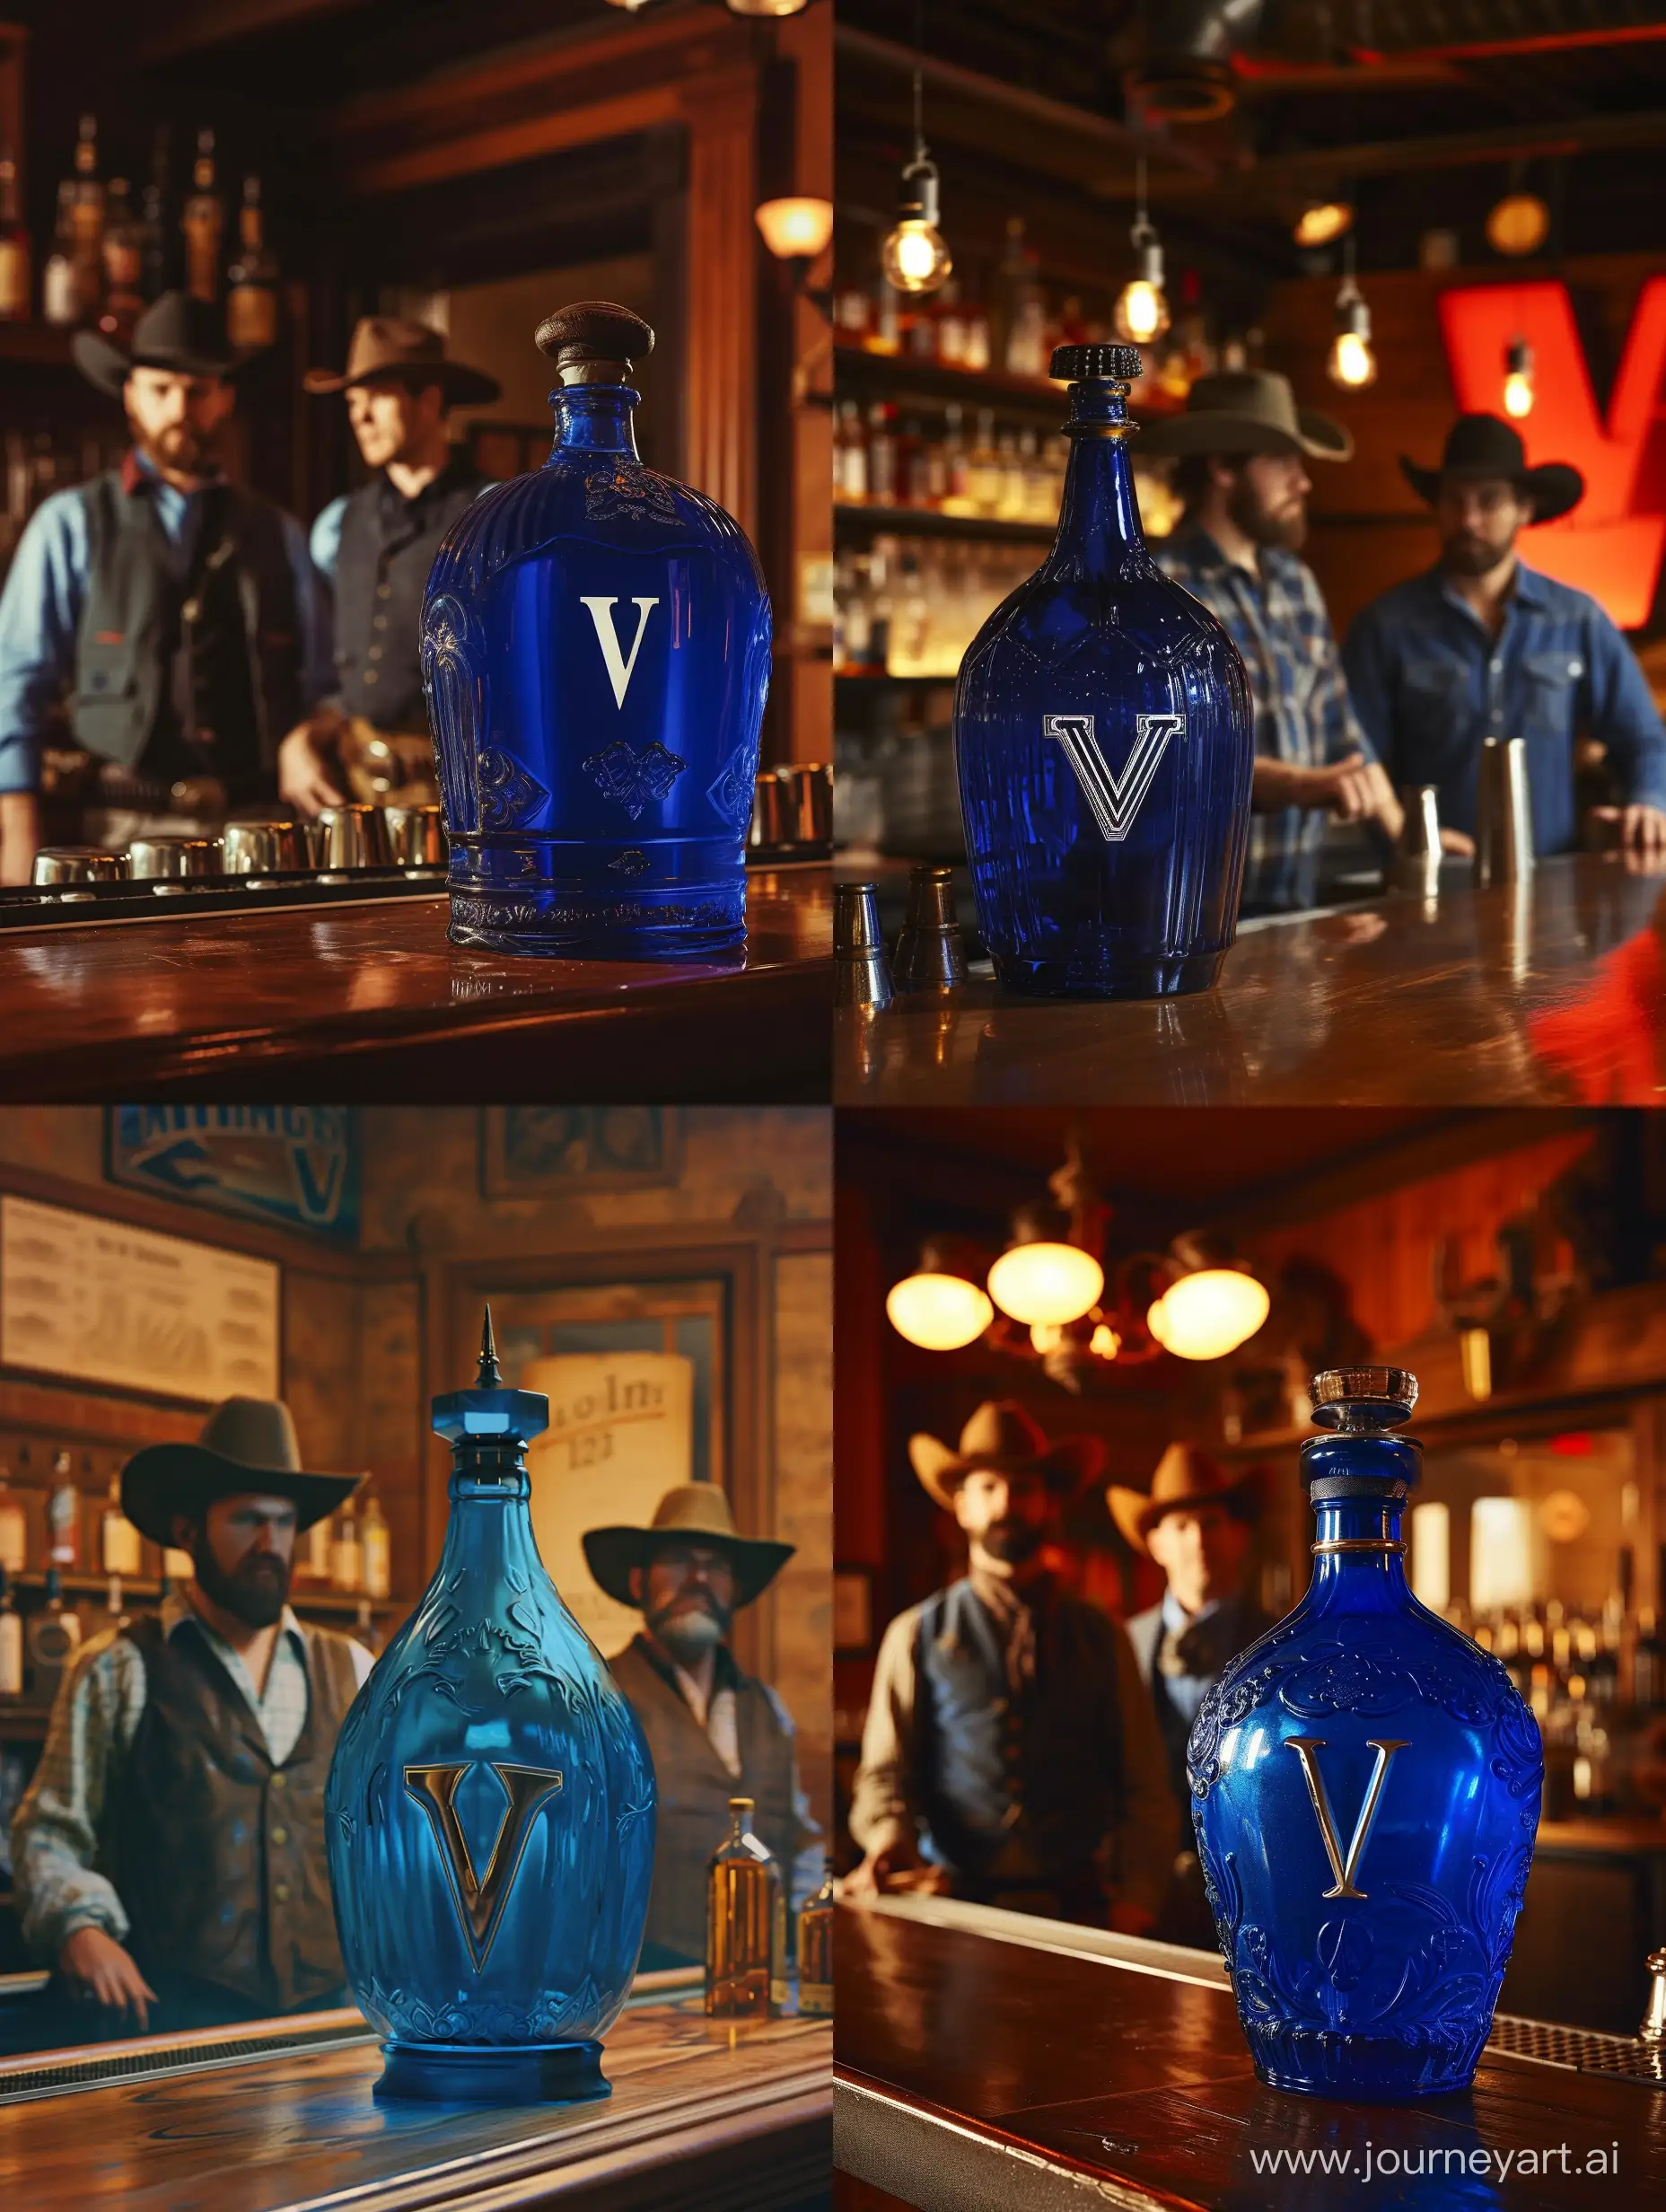 большая синяя бутылка алкоголя стоит на барной стойке на переднем плане, за ней стоят 2 ковбоя. На бутылке написана буква V
